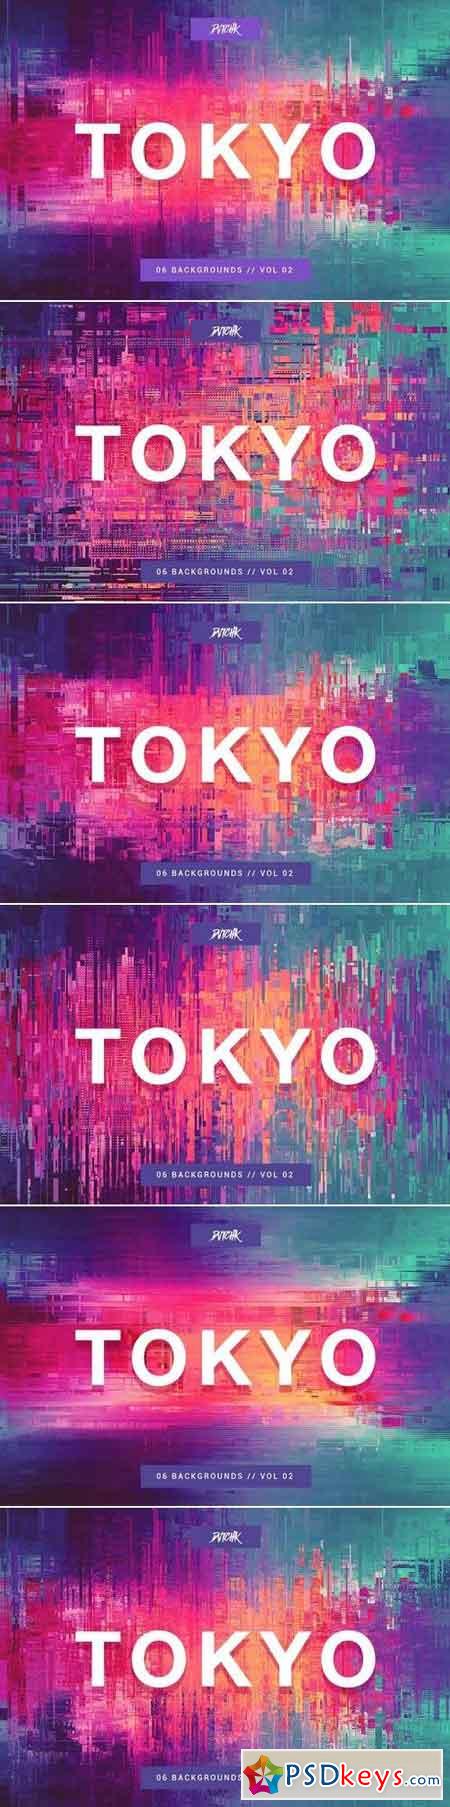 Tokyo City Glitch Backgrounds Vol. 02